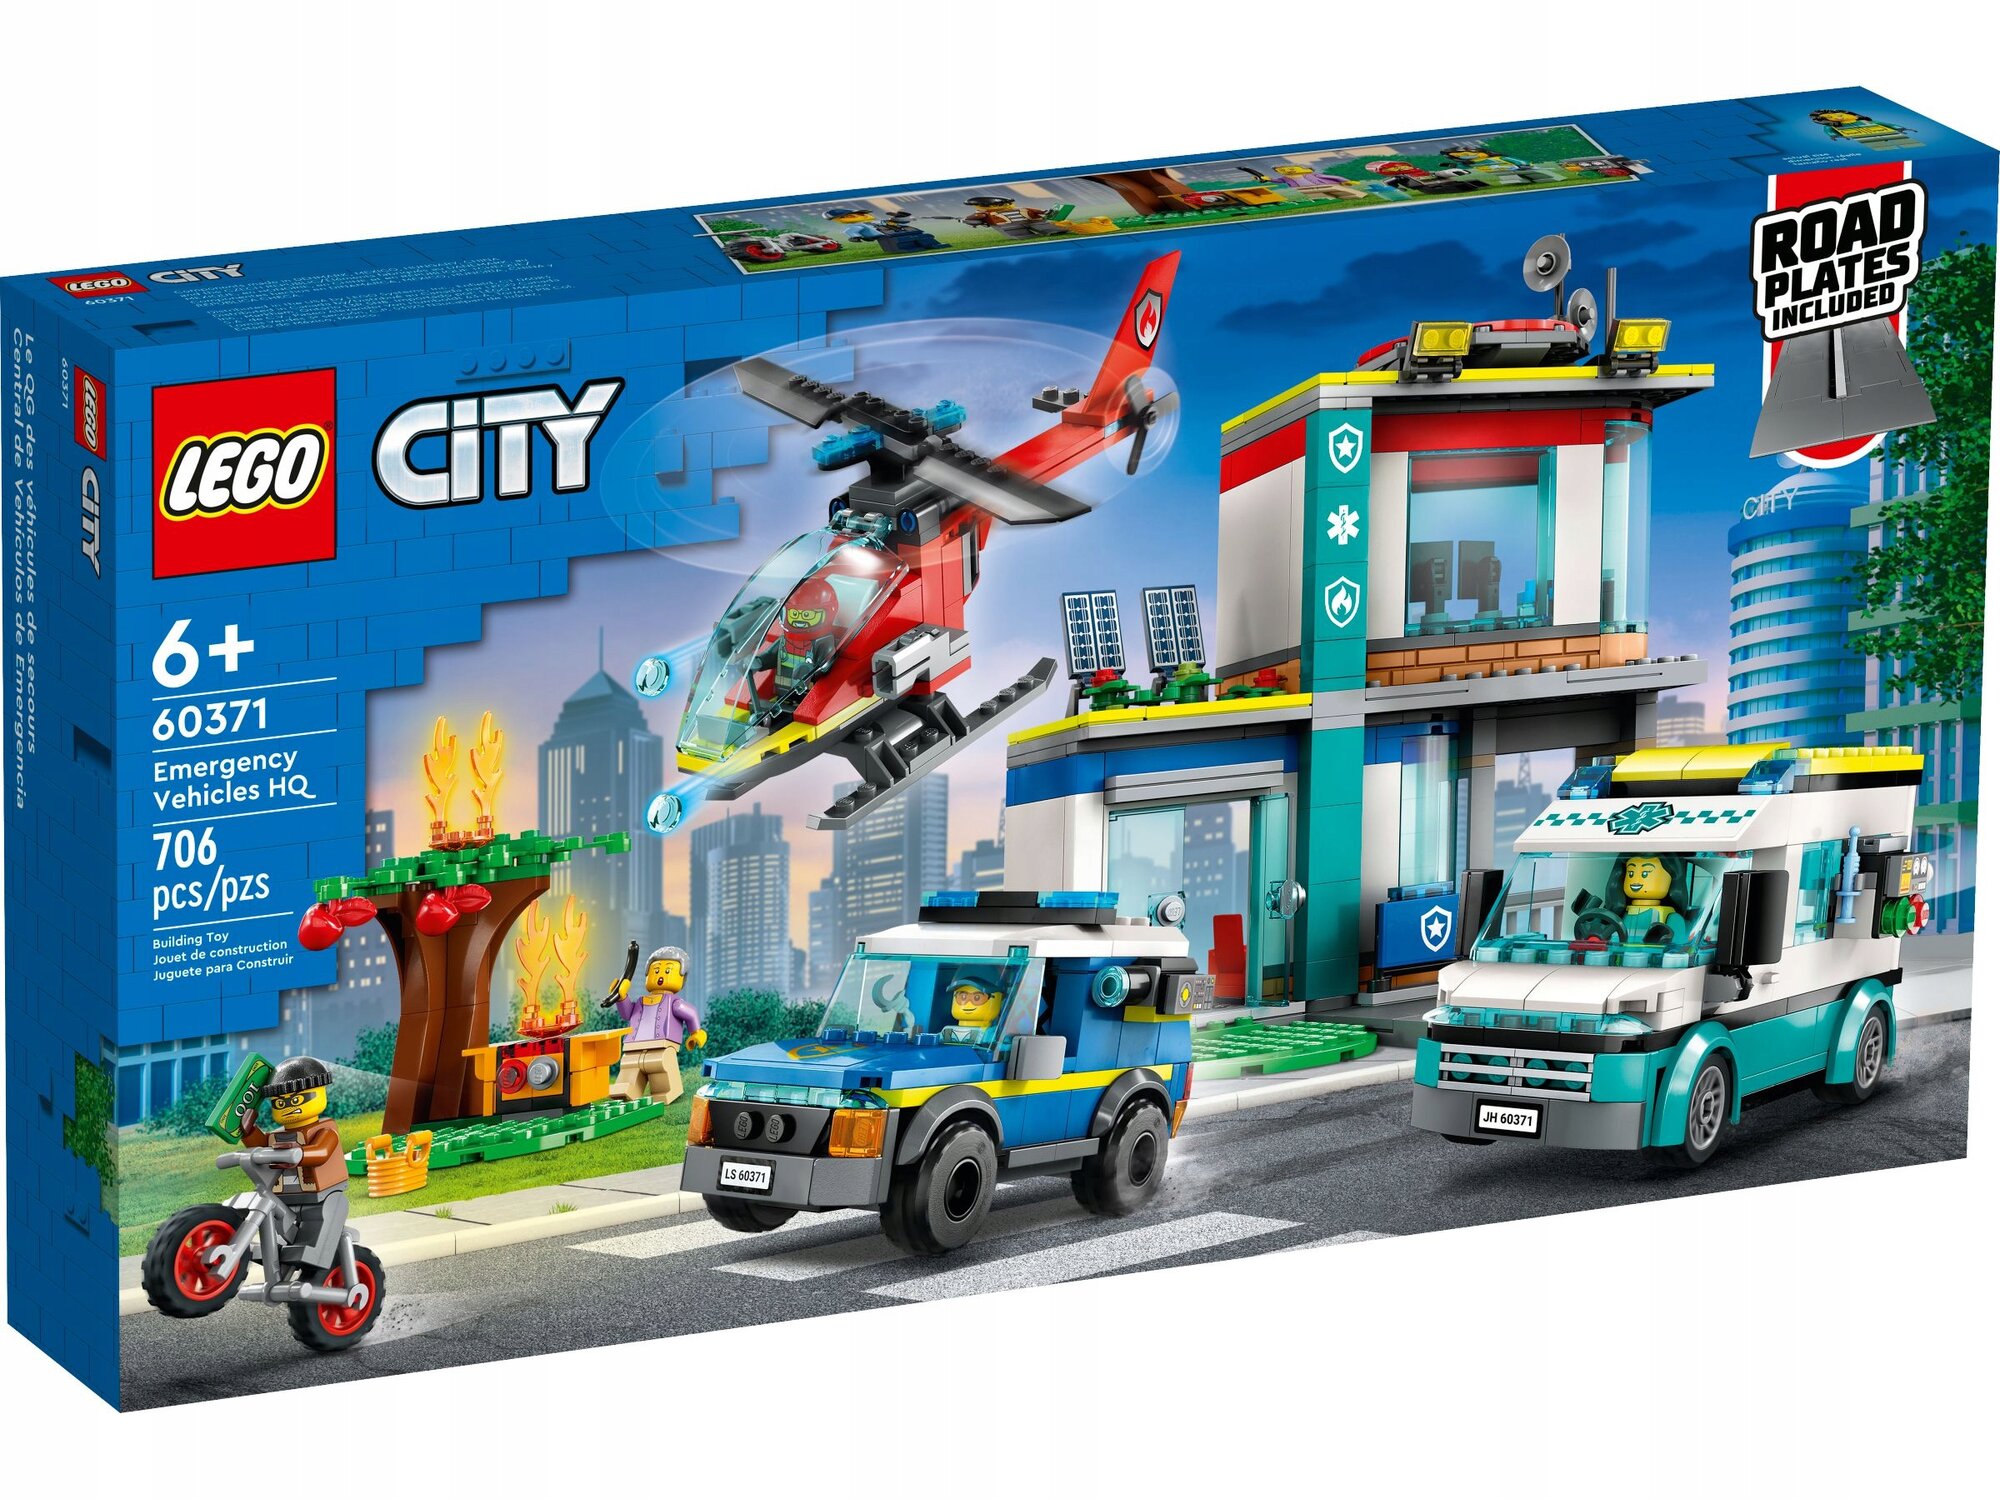 Конструктор LEGO City 60371 Штаб-квартира аварийных транспортных средств, 706 дет.